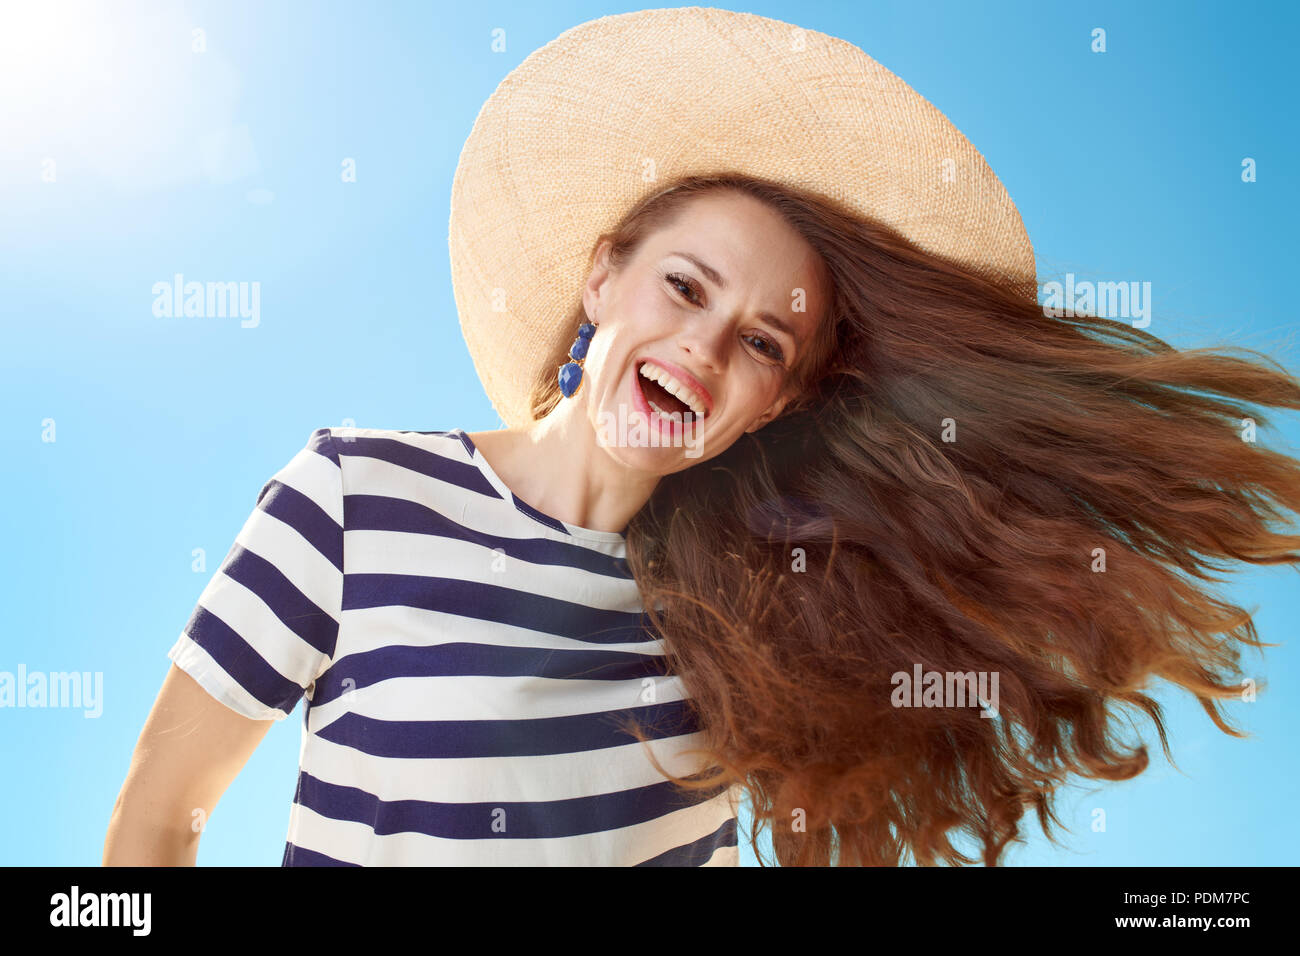 Lächelnd stilvolle Frau in Stroh Hut mit flatternden Haare gegen den blauen Himmel Stockfoto